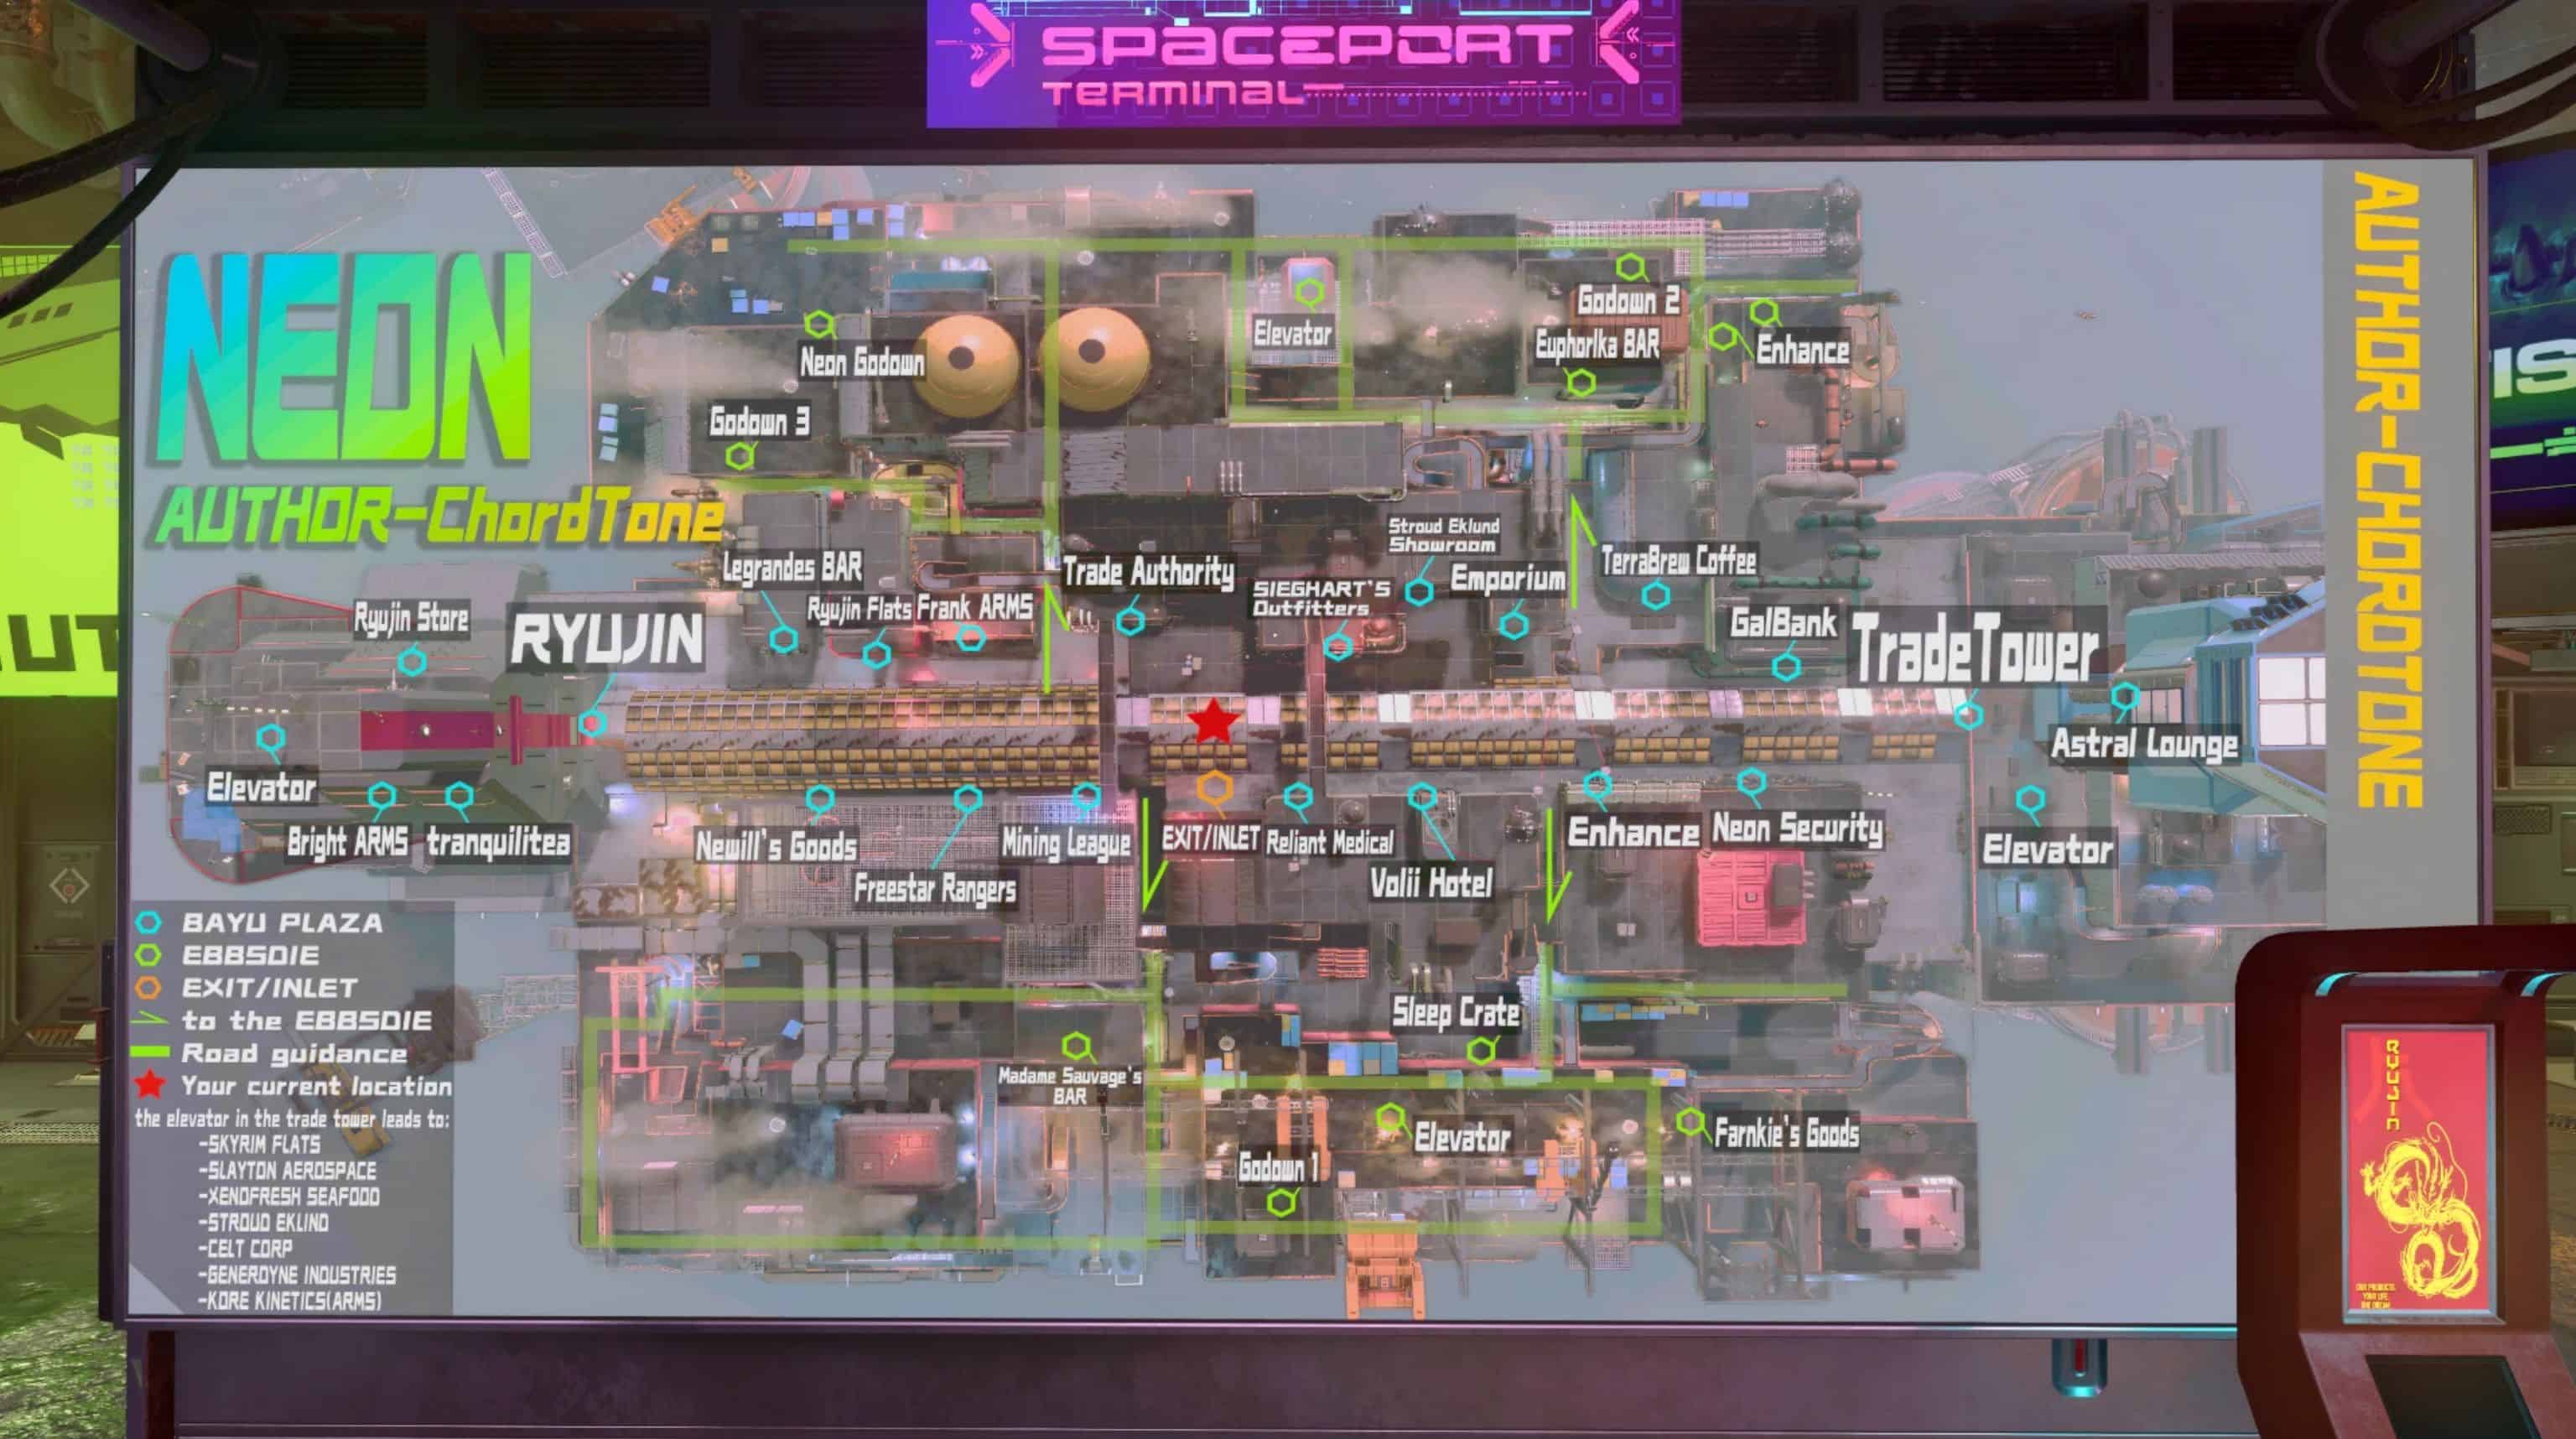 Neon City Map Starfield